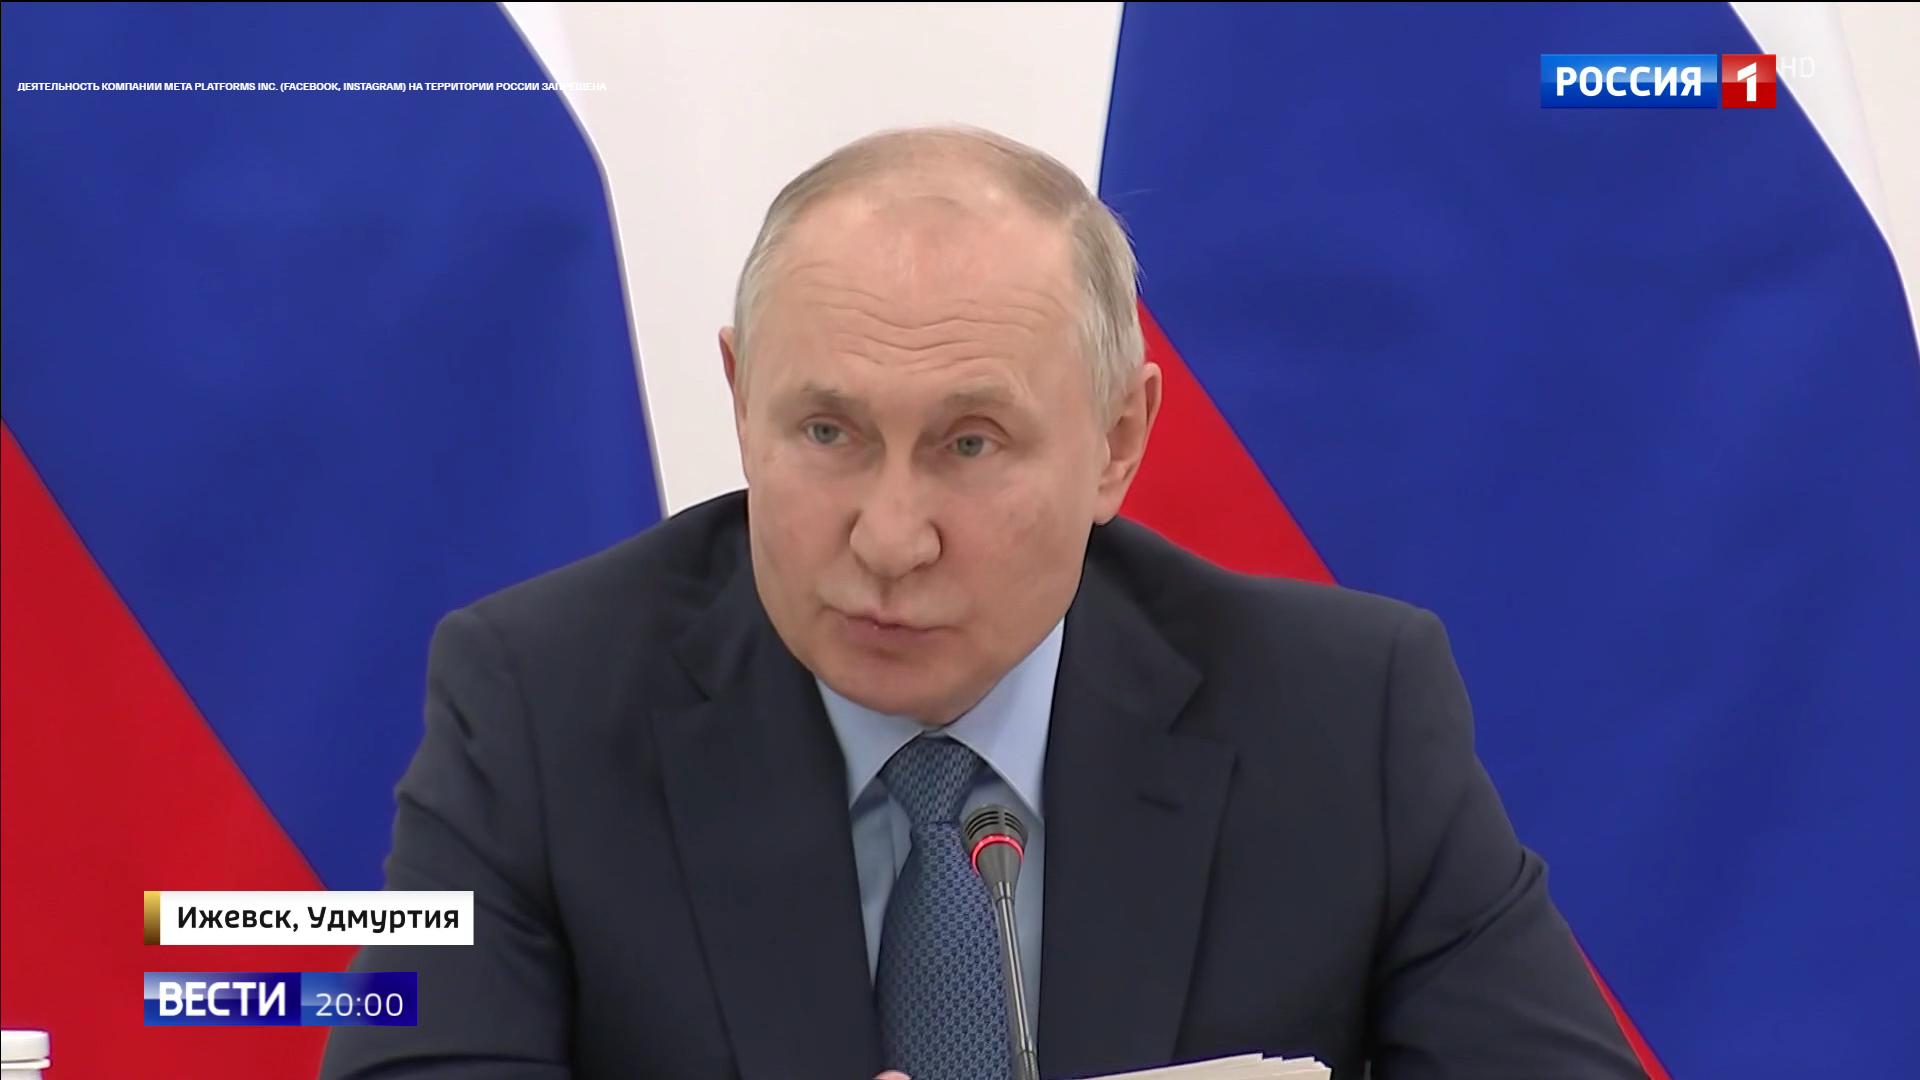 Putin siedzi i mówi na tle rosyjskiej flagi.